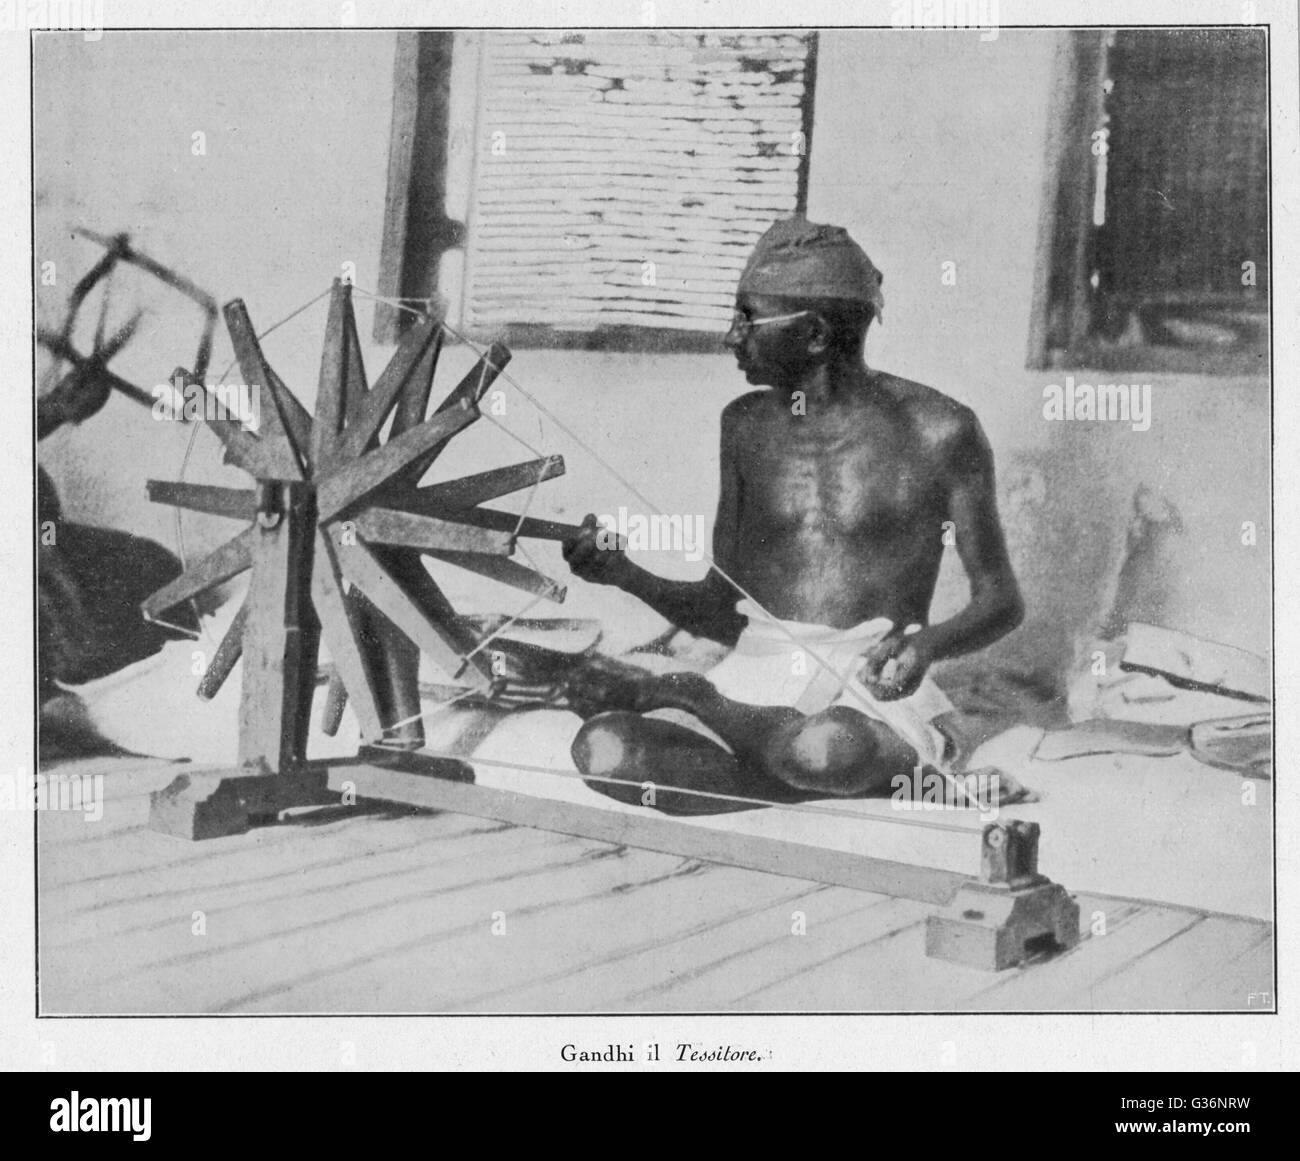 Mahatma Gandhi, chef spirituel et nationaliste indien, tournant à son volant (Charakha) en 1931, démontrant sa forte éthique de travail. Date : 1869 - 1948 Banque D'Images